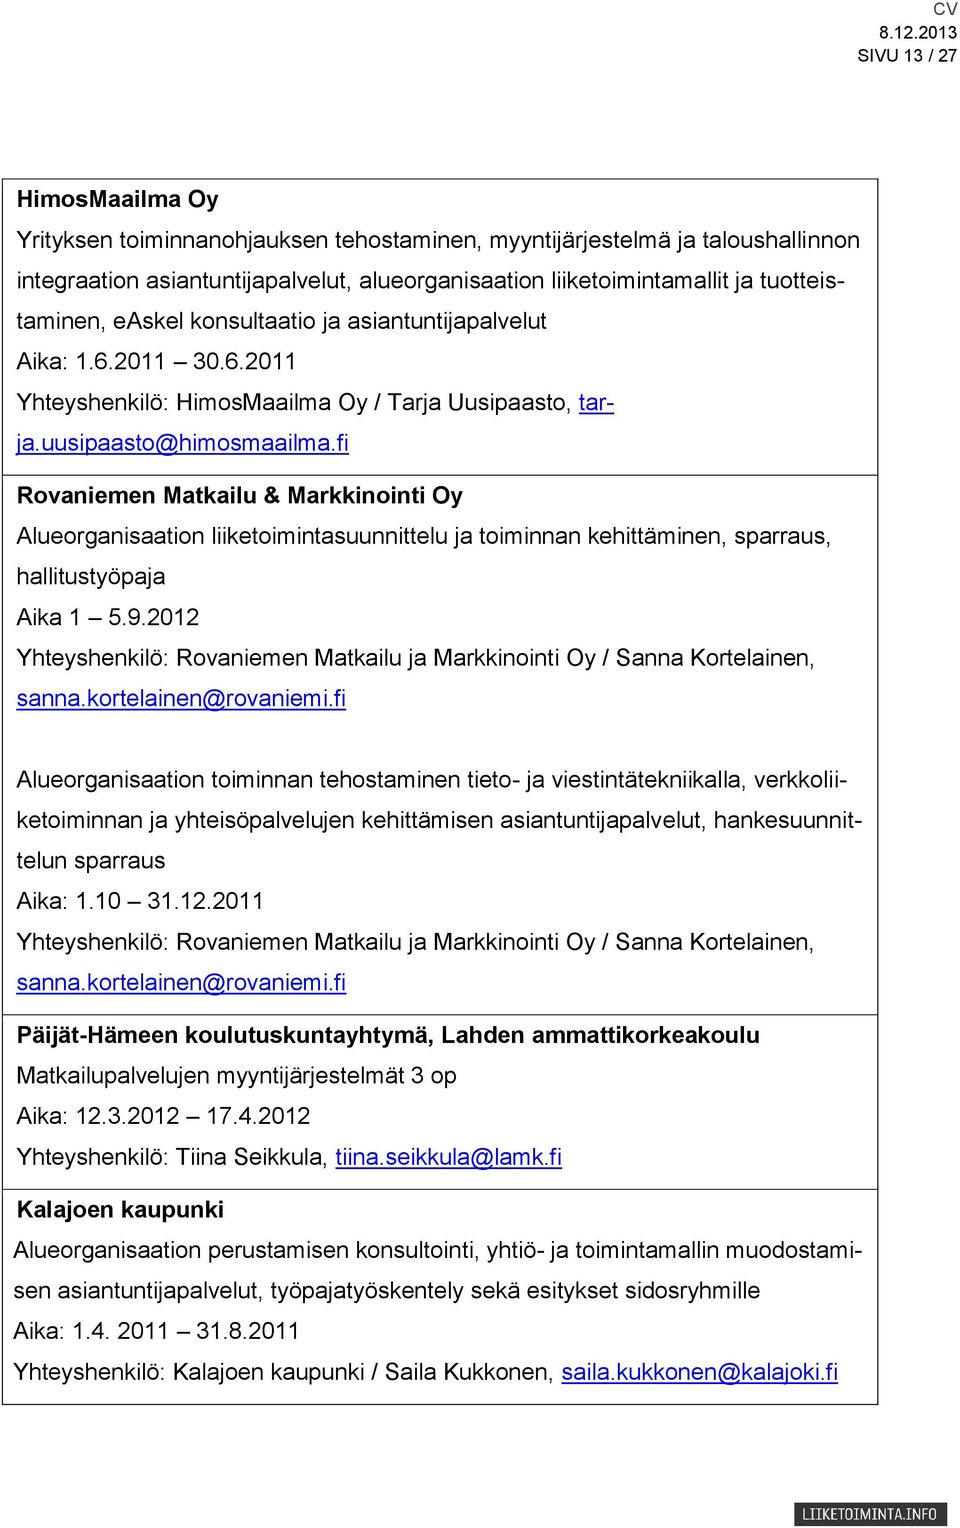 fi Rovaniemen Matkailu & Markkinointi Oy Alueorganisaation liiketoimintasuunnittelu ja toiminnan kehittäminen, sparraus, hallitustyöpaja Aika 1 5.9.